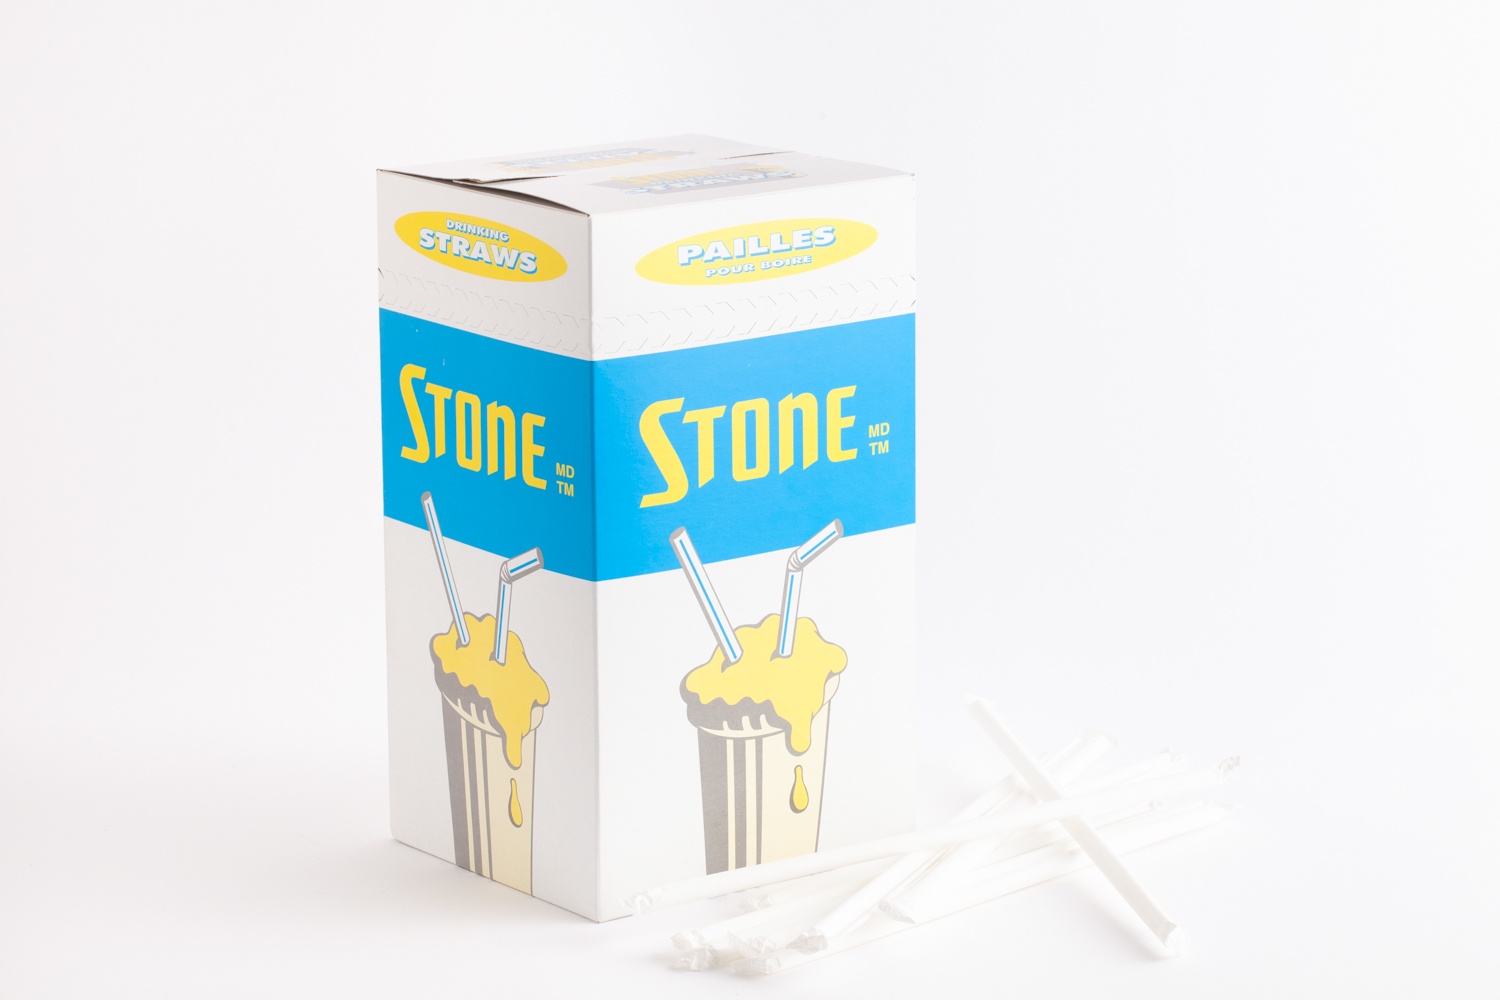 isolated product shot - stone straws box blue